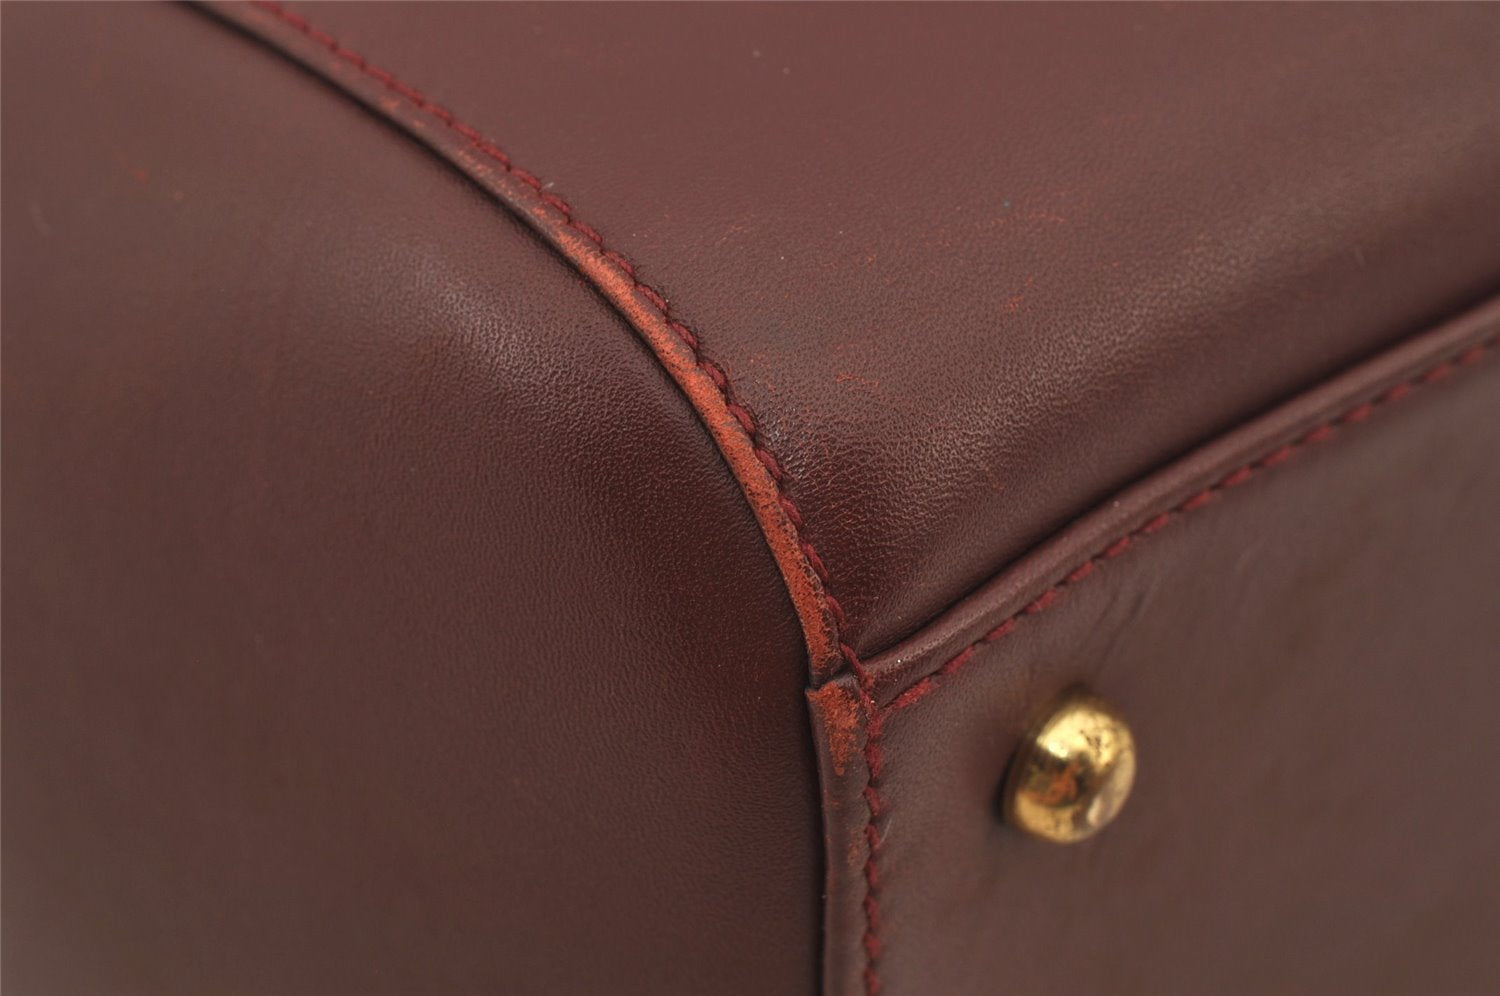 Authentic Cartier Must de Cartier Hand Boston Bag Leather Bordeaux Red 6722J